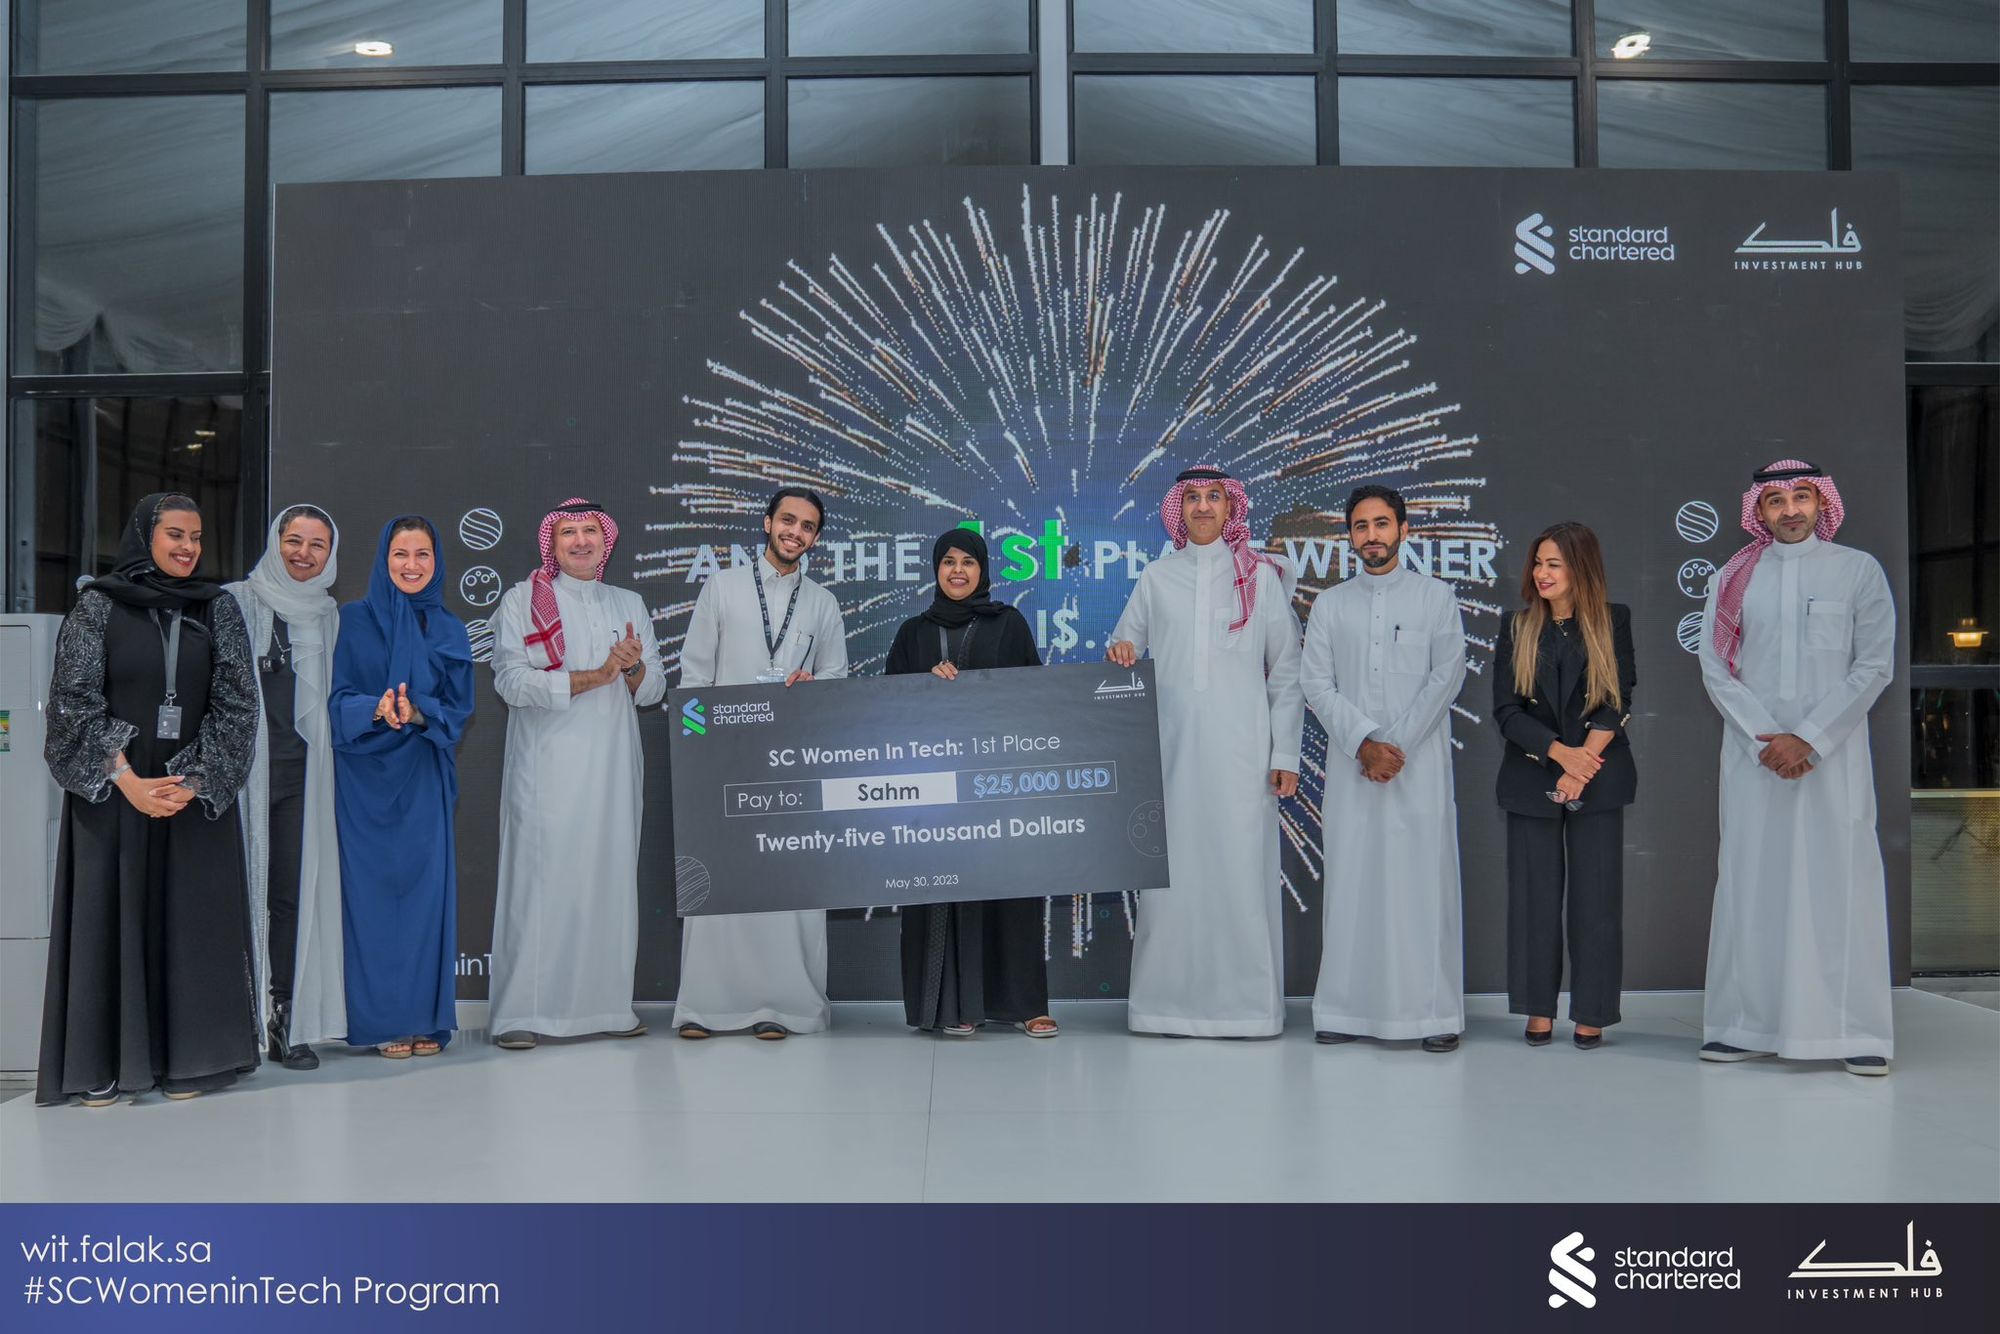 SC Women in Tech Awards $50,000 to 3 Female-led Startups in Saudi Arabia